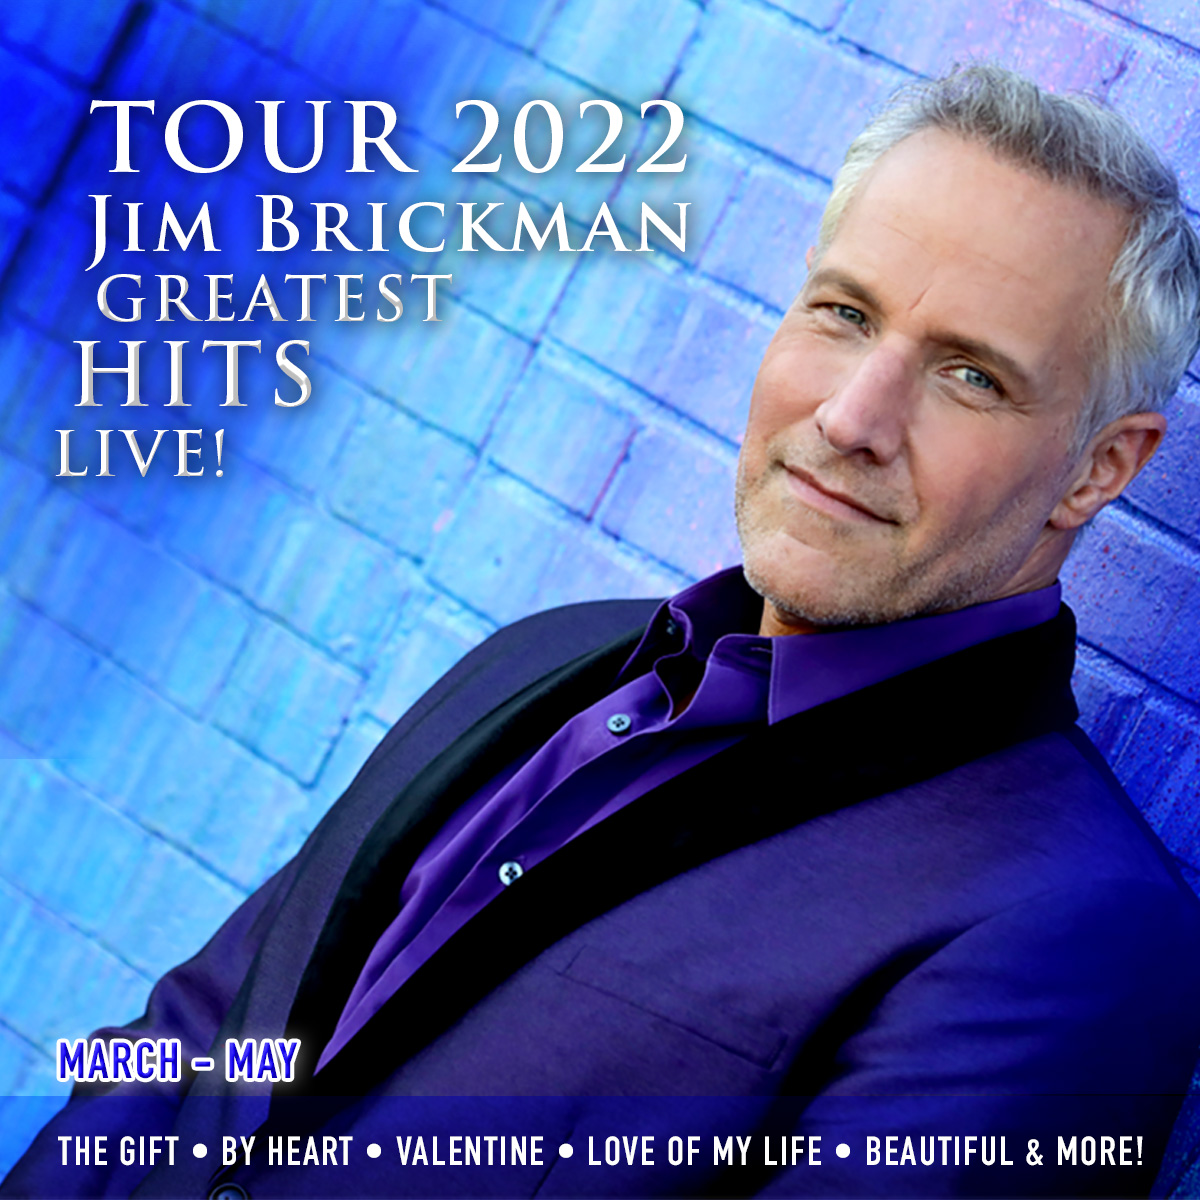 jim brickman tour dates